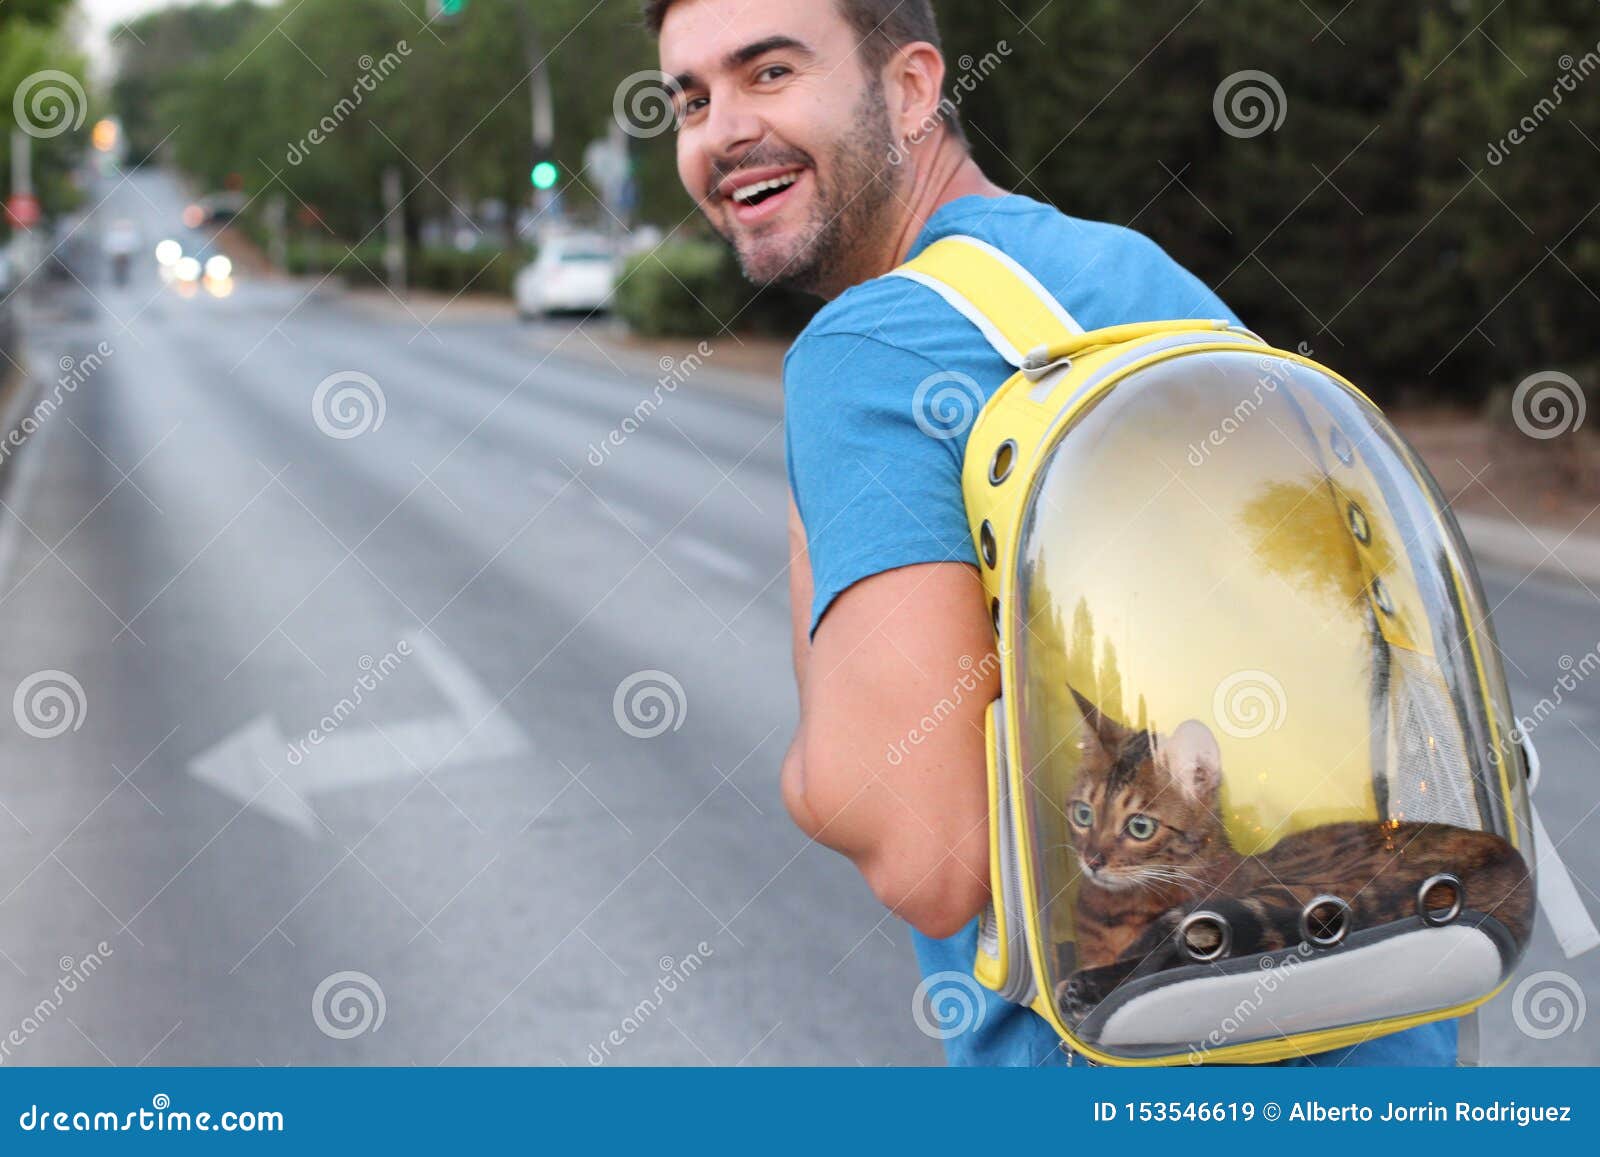 Homme Adorable Portant Son Chat Dans Le Sac A Dos De Style De Bulle Image Stock Image Du Animal Mignon